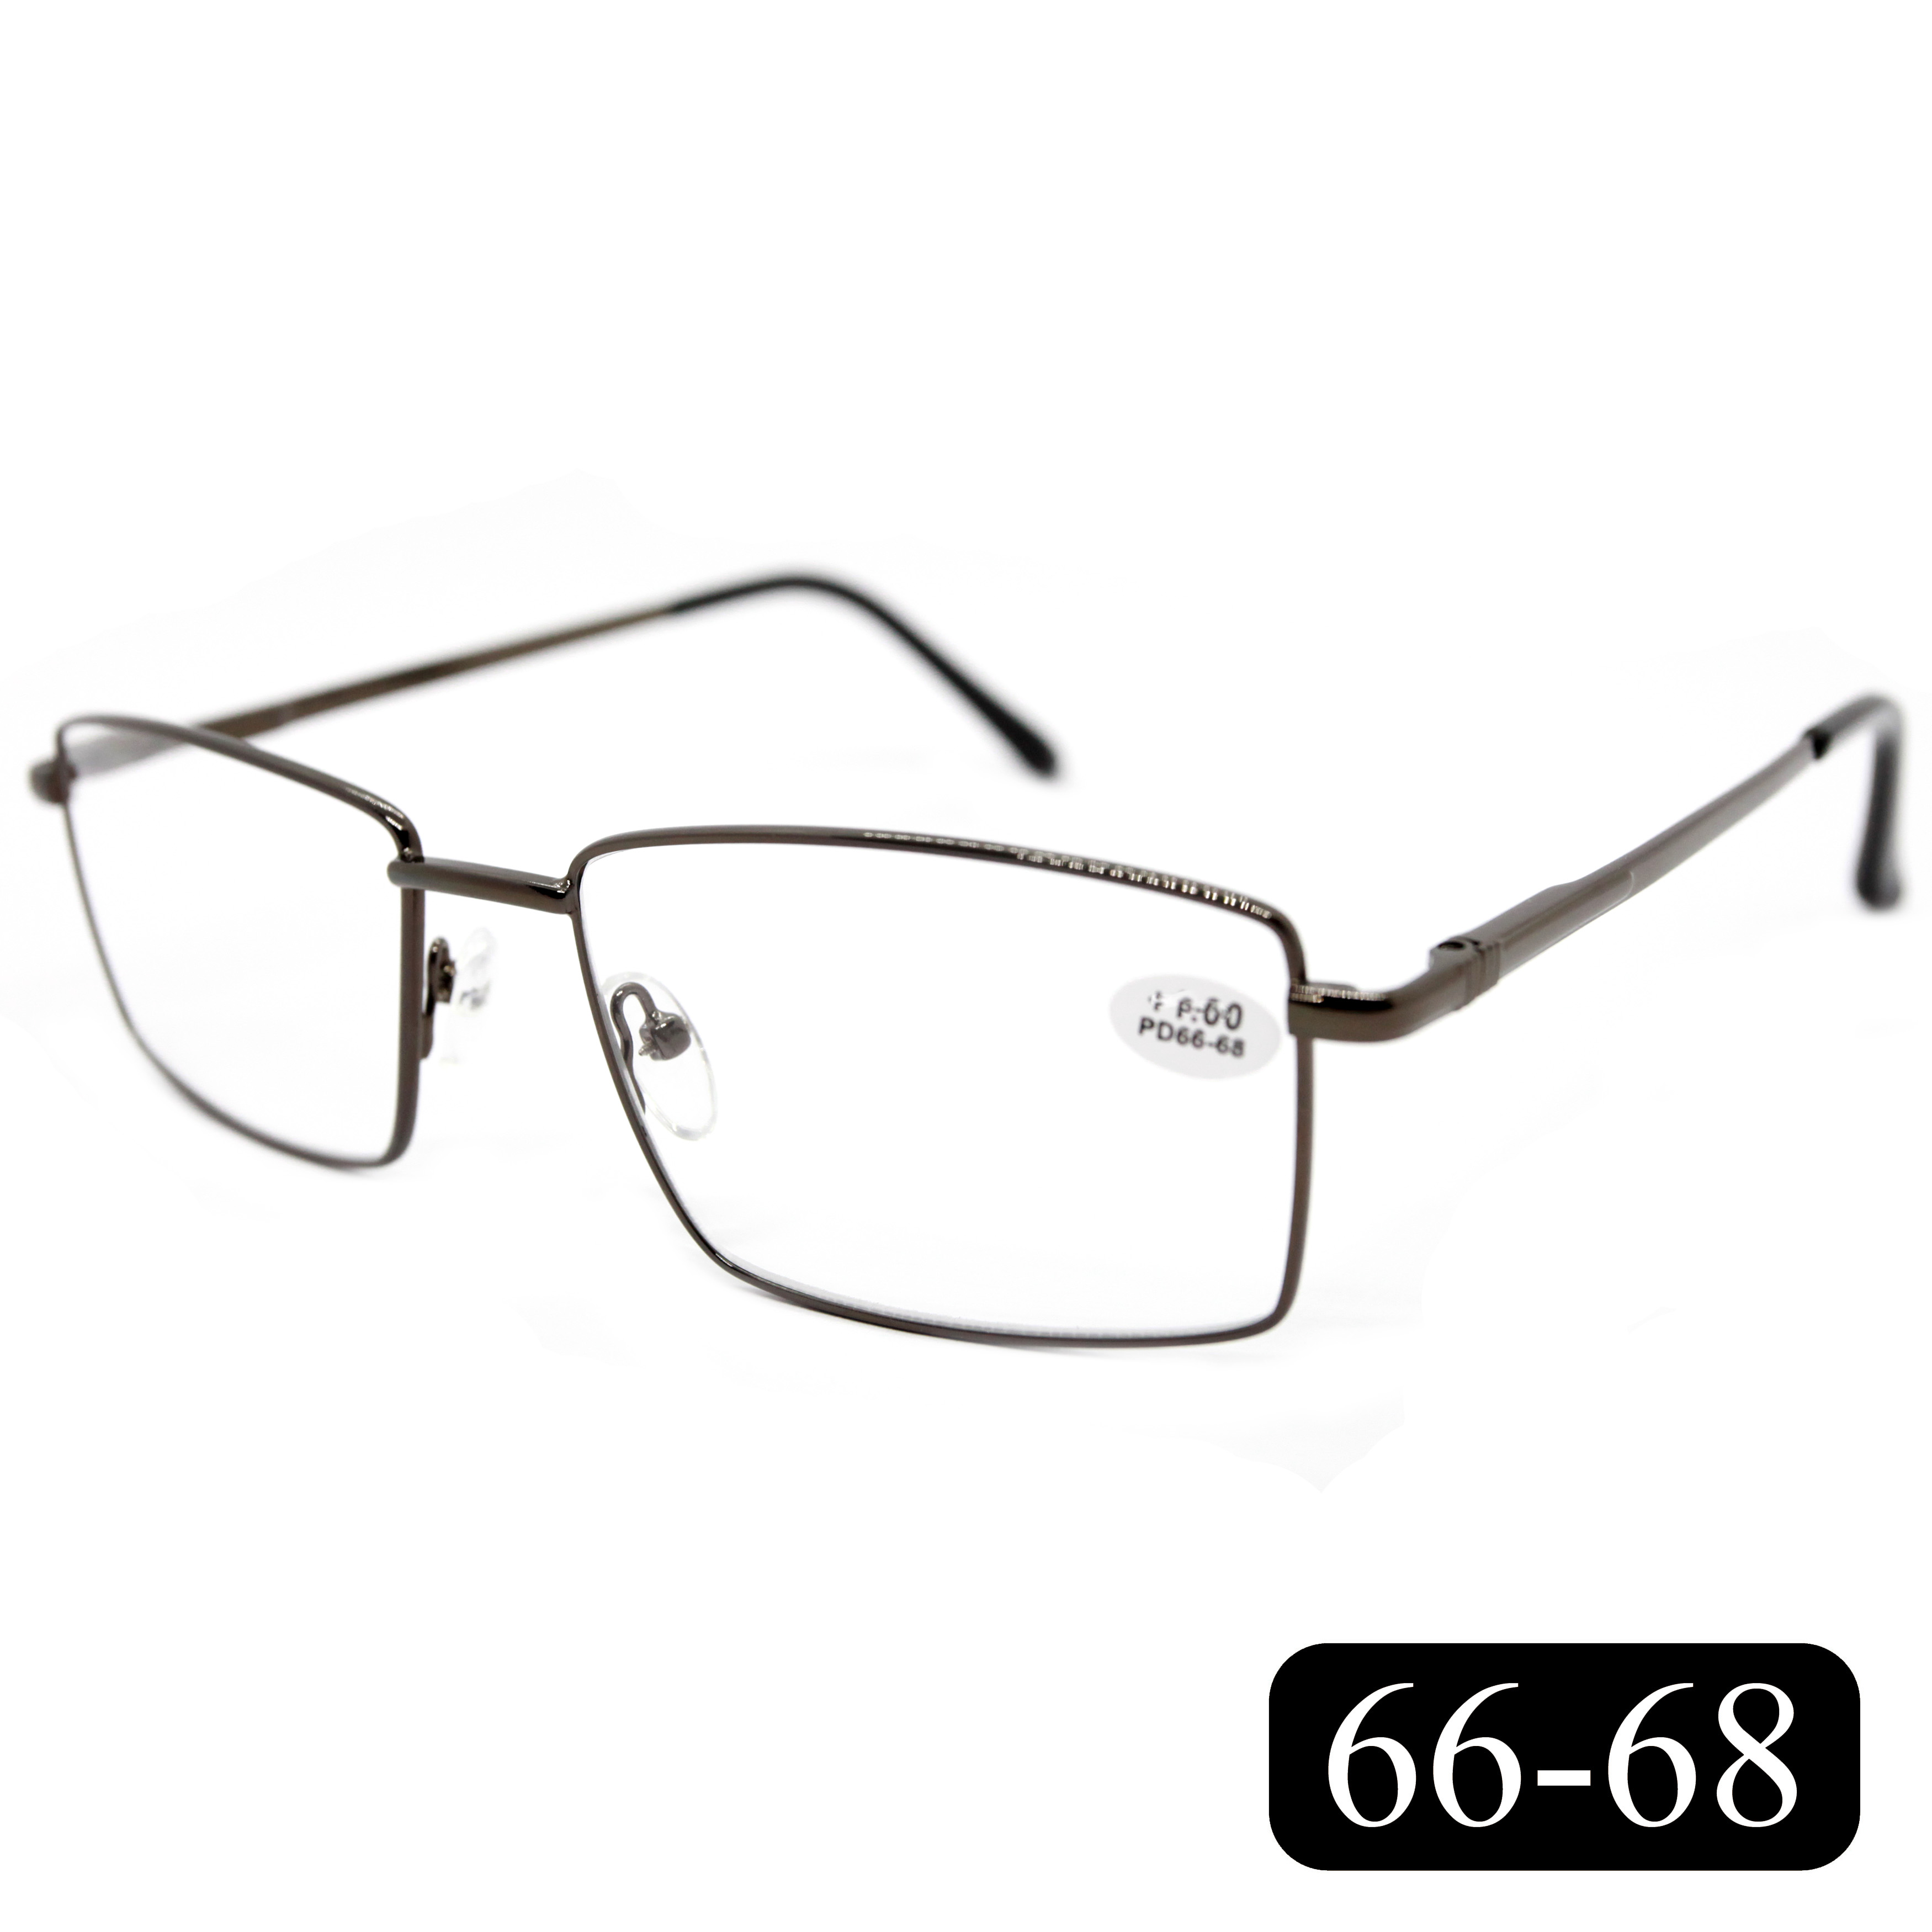 Готовые очки МОСТ 182 M2, для чтения, +2,25, без футляра, серые, РЦ 66-68